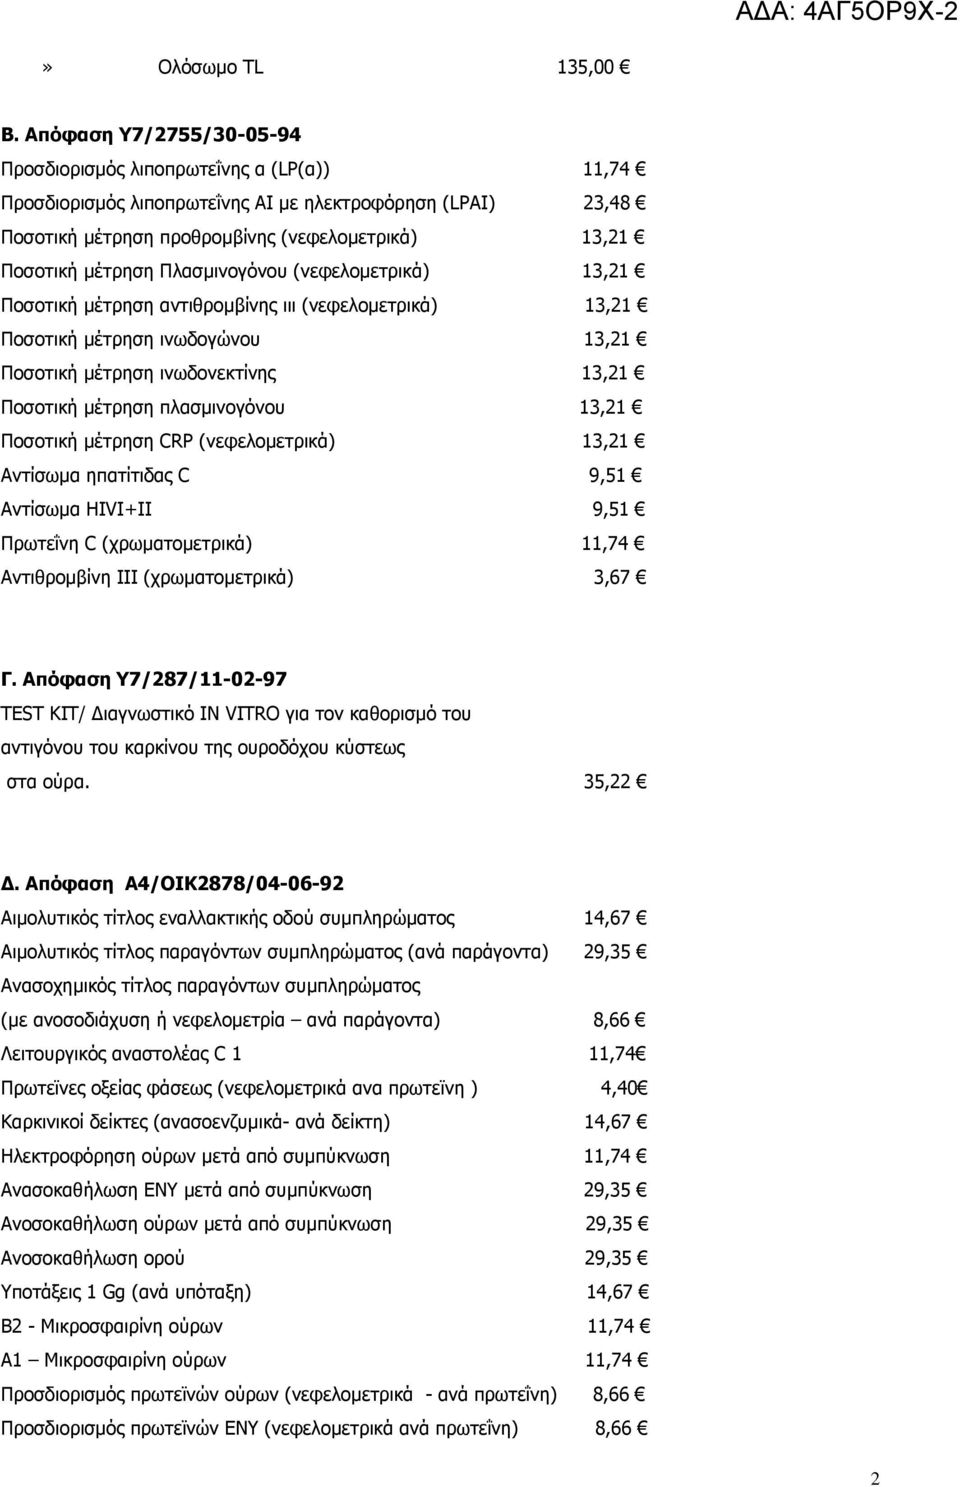 Πλασµινογόνου (νεφελοµετρικά) 13,21 Ποσοτική µέτρηση αντιθροµβίνης ιιι (νεφελοµετρικά) 13,21 Ποσοτική µέτρηση ινωδογώνου 13,21 Ποσοτική µέτρηση ινωδονεκτίνης 13,21 Ποσοτική µέτρηση πλασµινογόνου